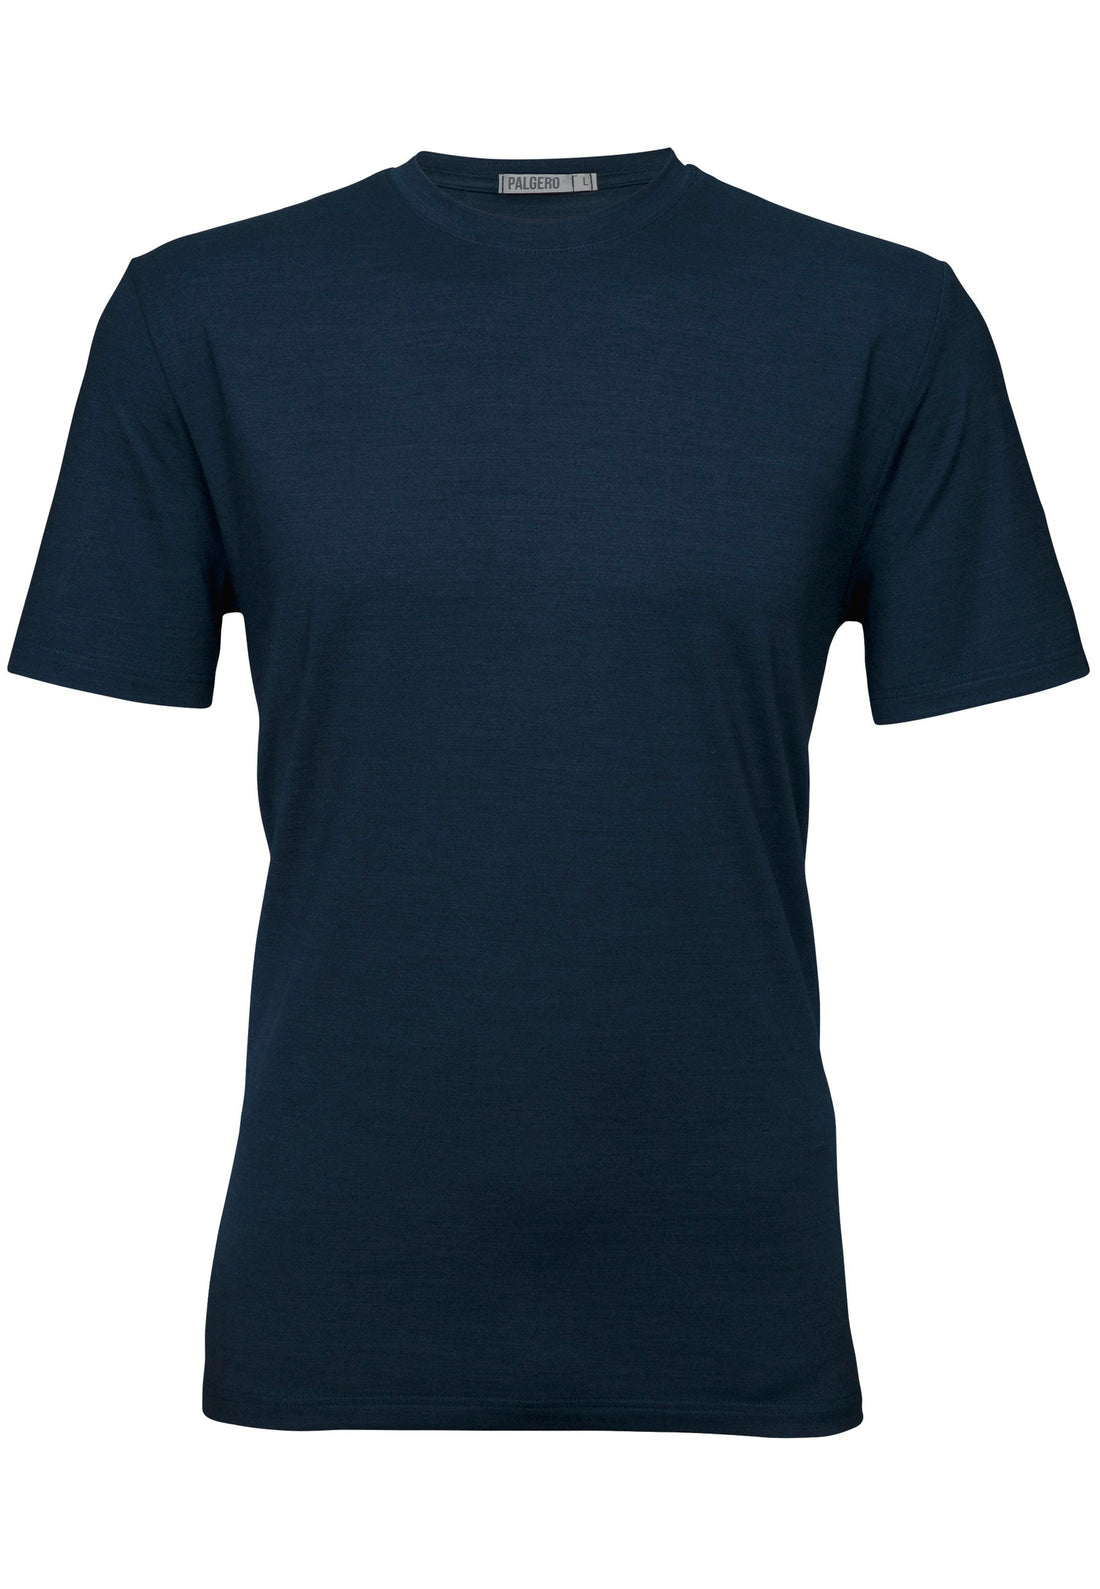 STIG MERINO T-Shirt Herren